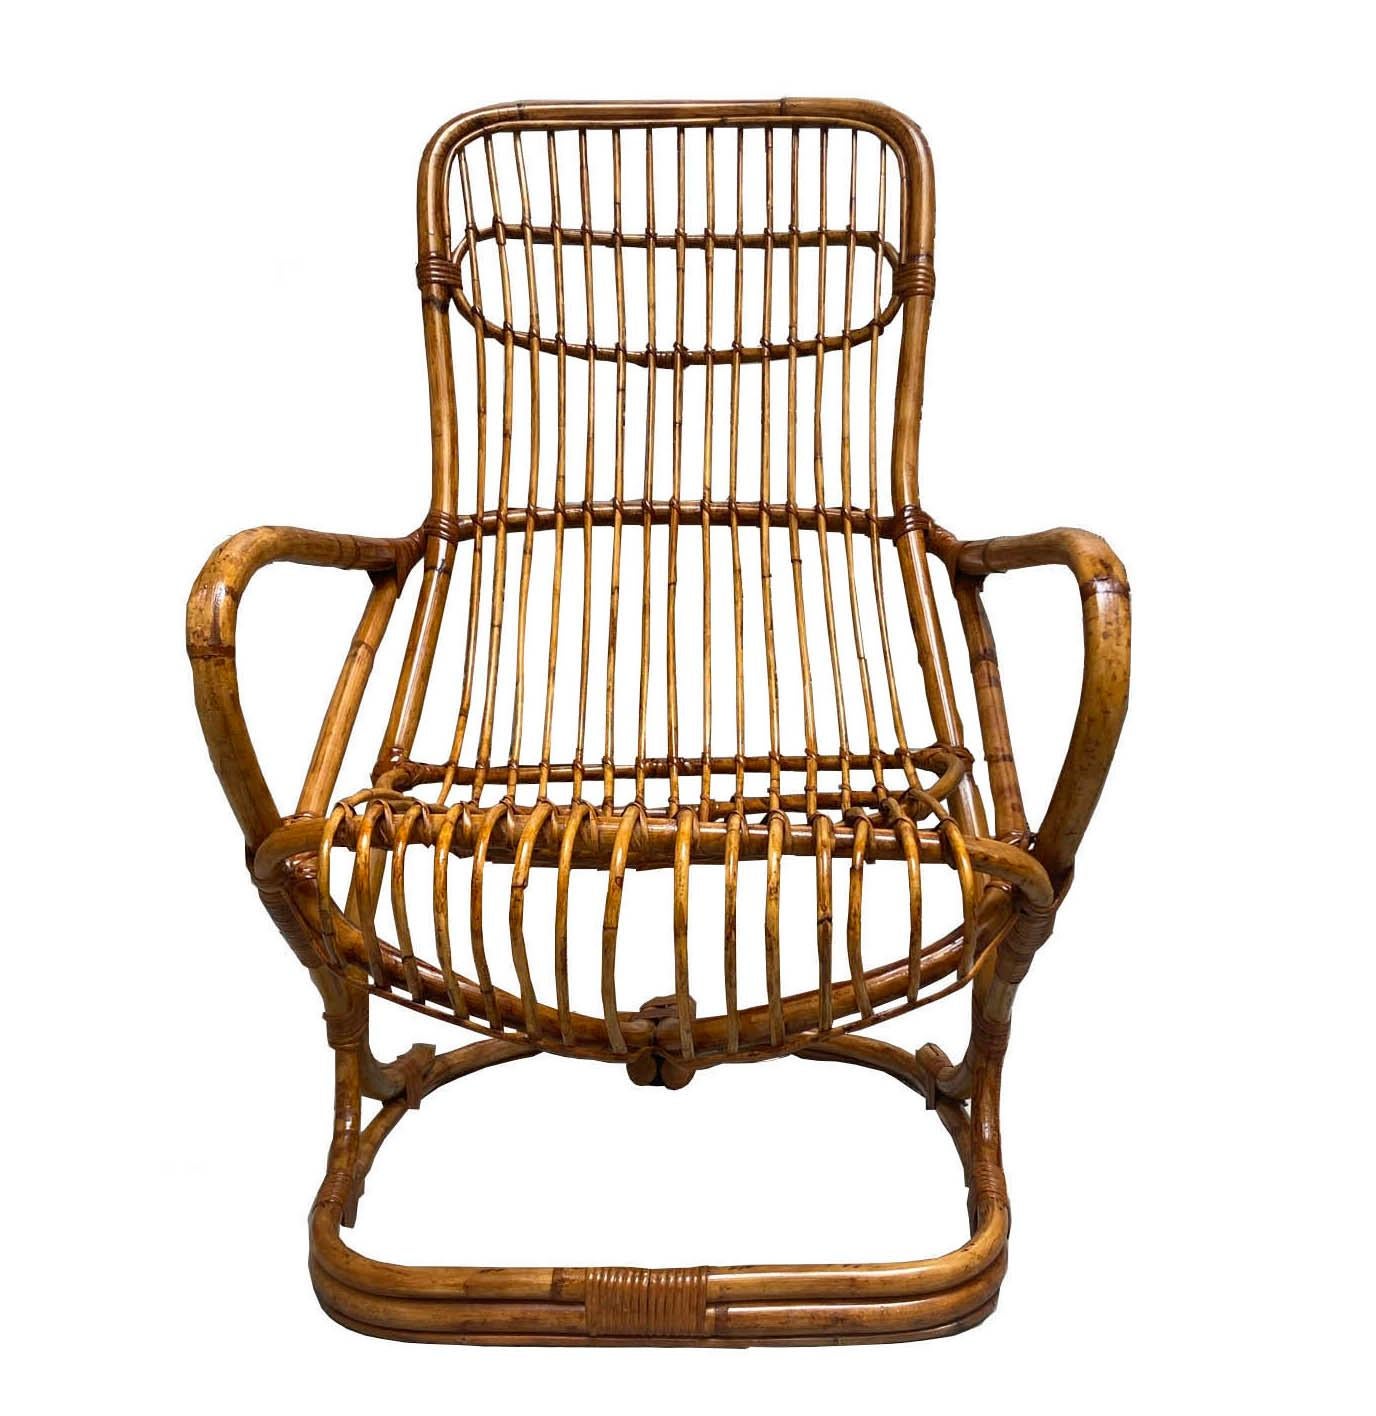 Rare and elegant armchair in fat manila and woven rattan, designed by Tito Agnoli for Bonacina in the 1960s.